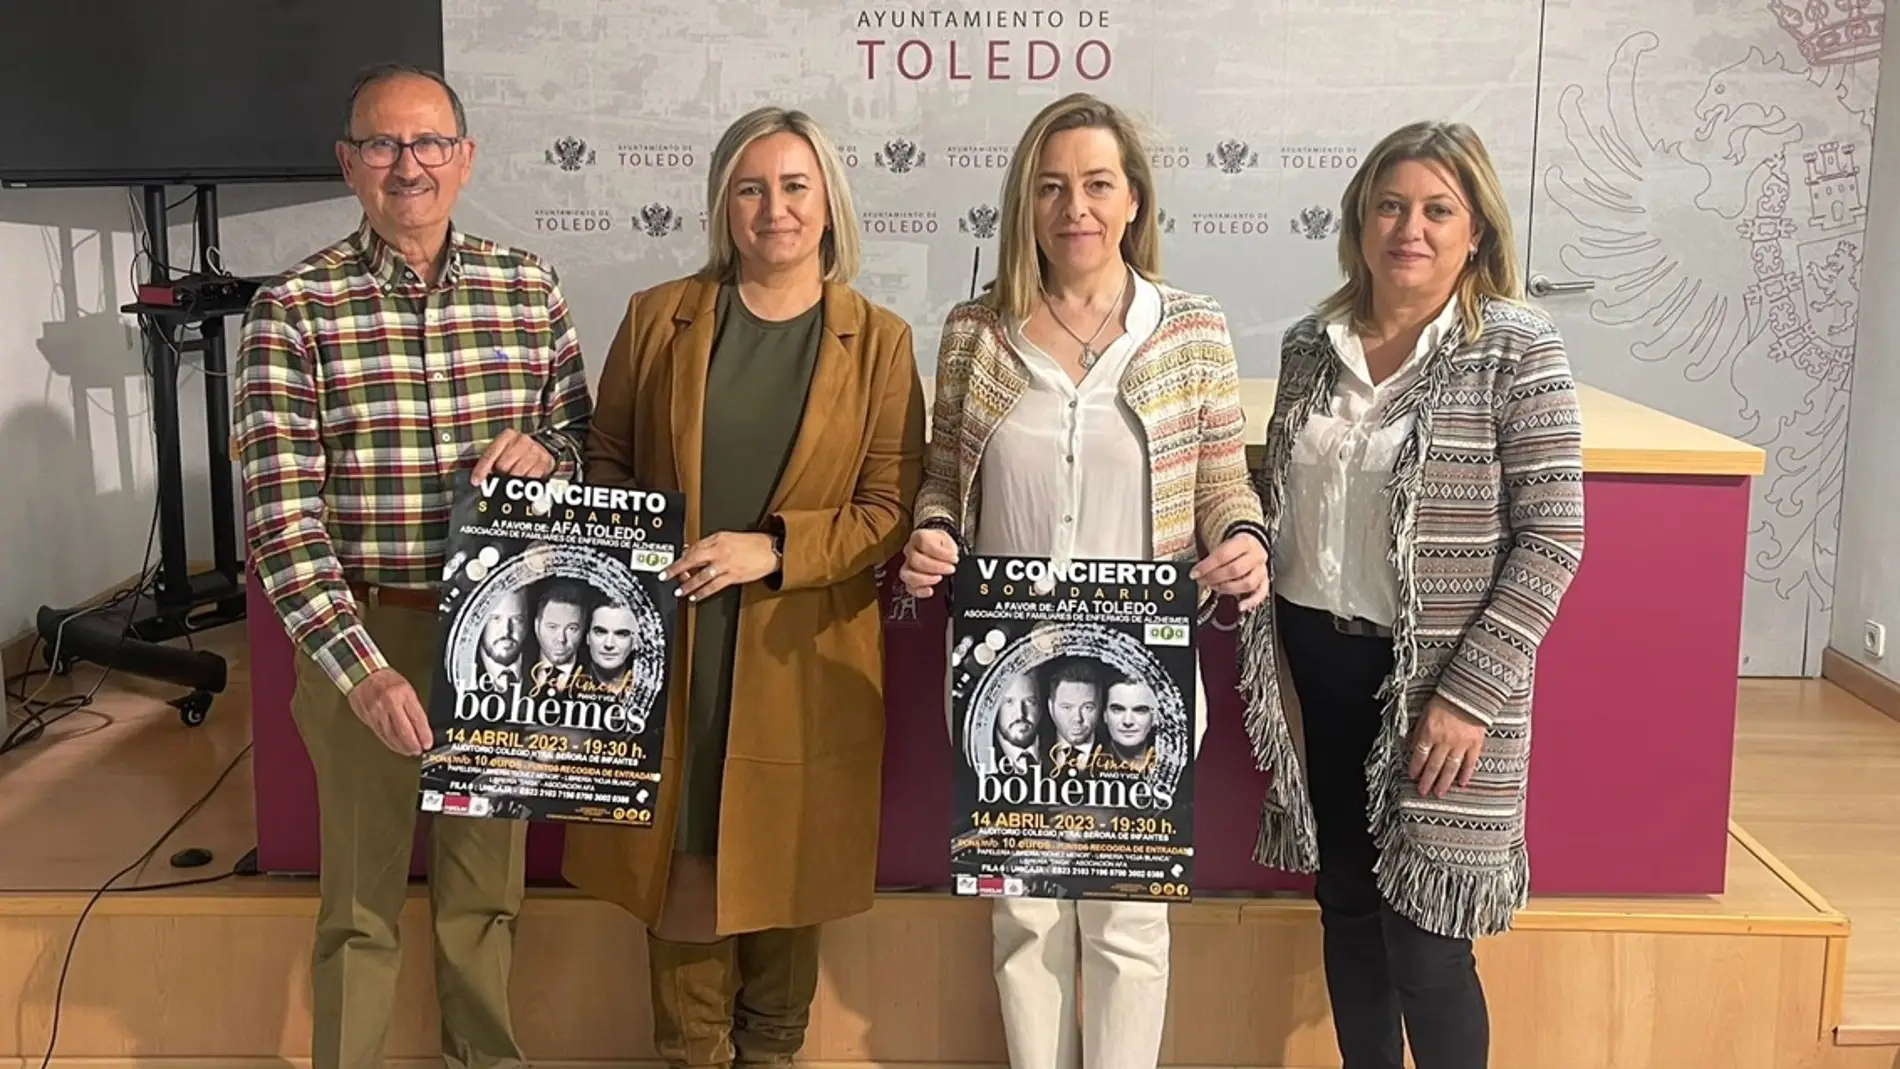 Toledo acoge el concierto solidario de ‘Les Bohemes’ a beneficio de AFA